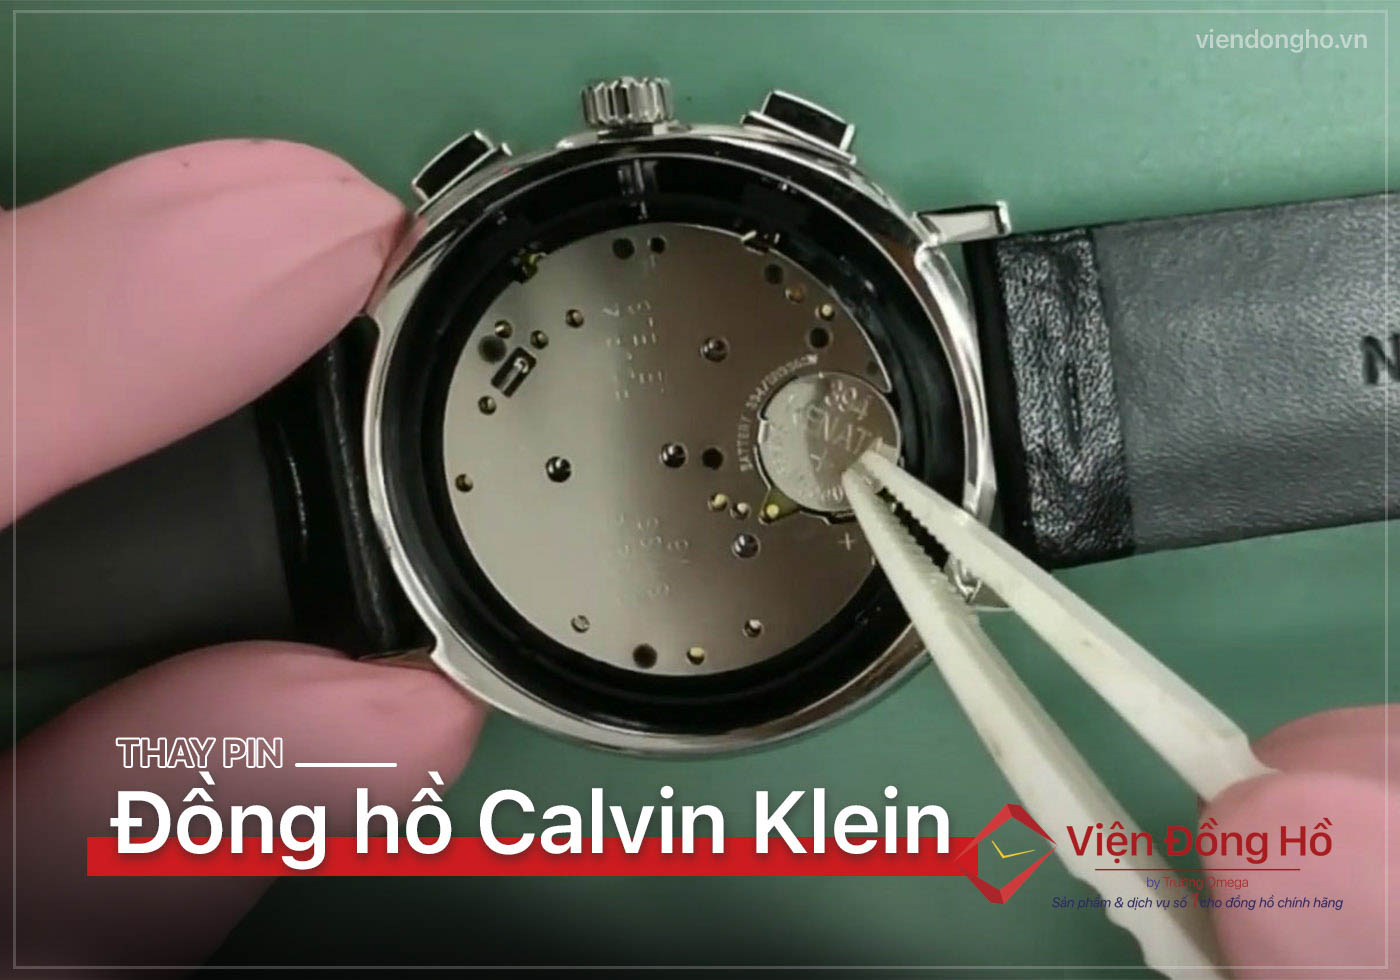 Thay pin dong ho Calvin Klein 5